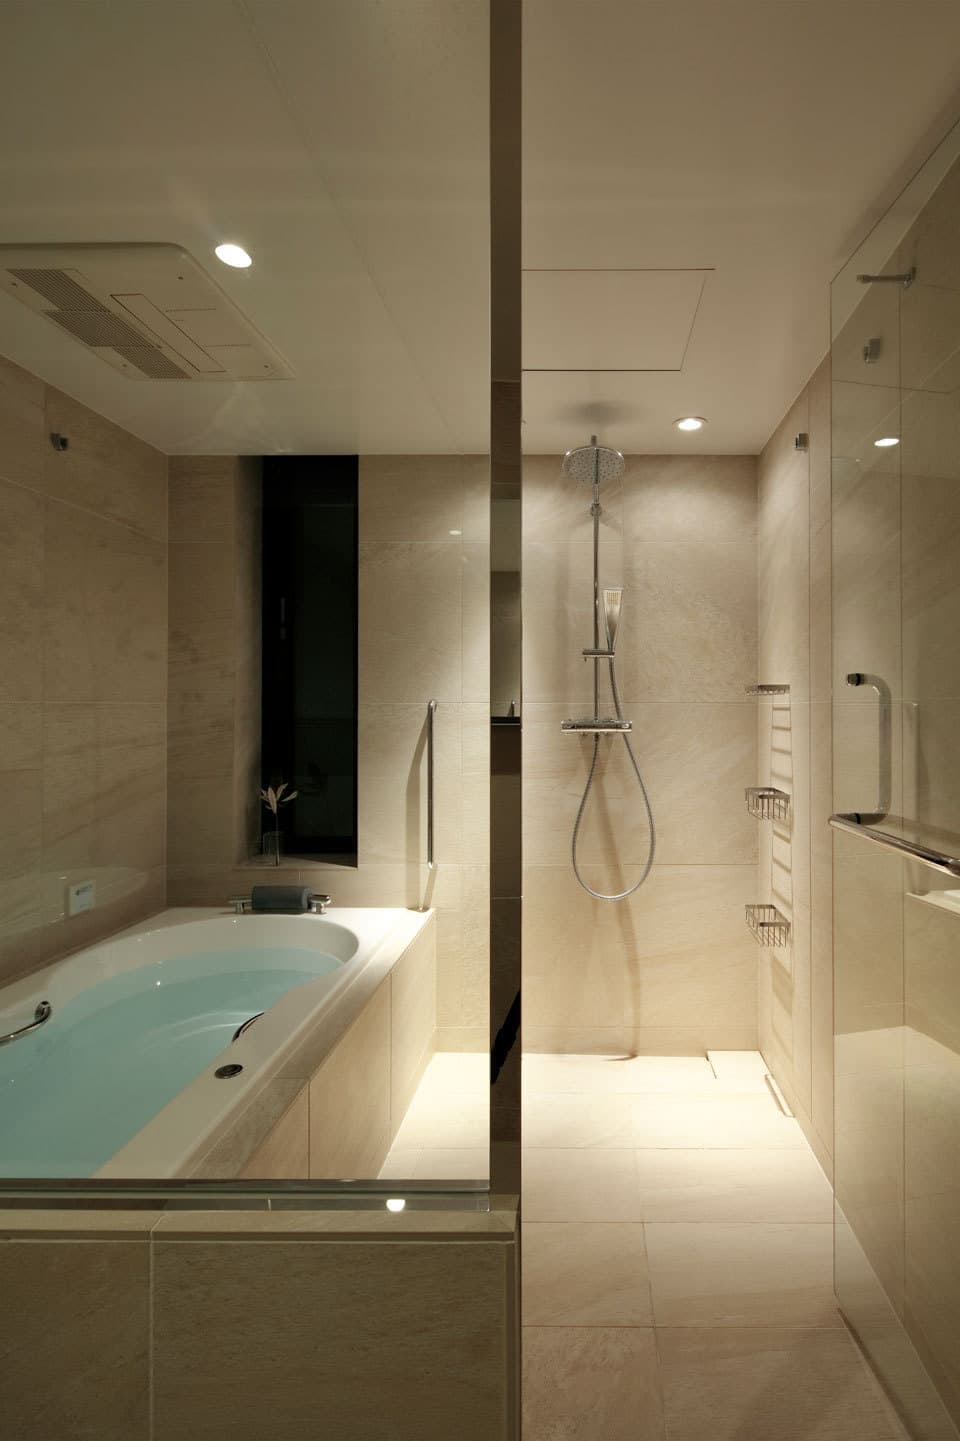 ホテルのような浴室